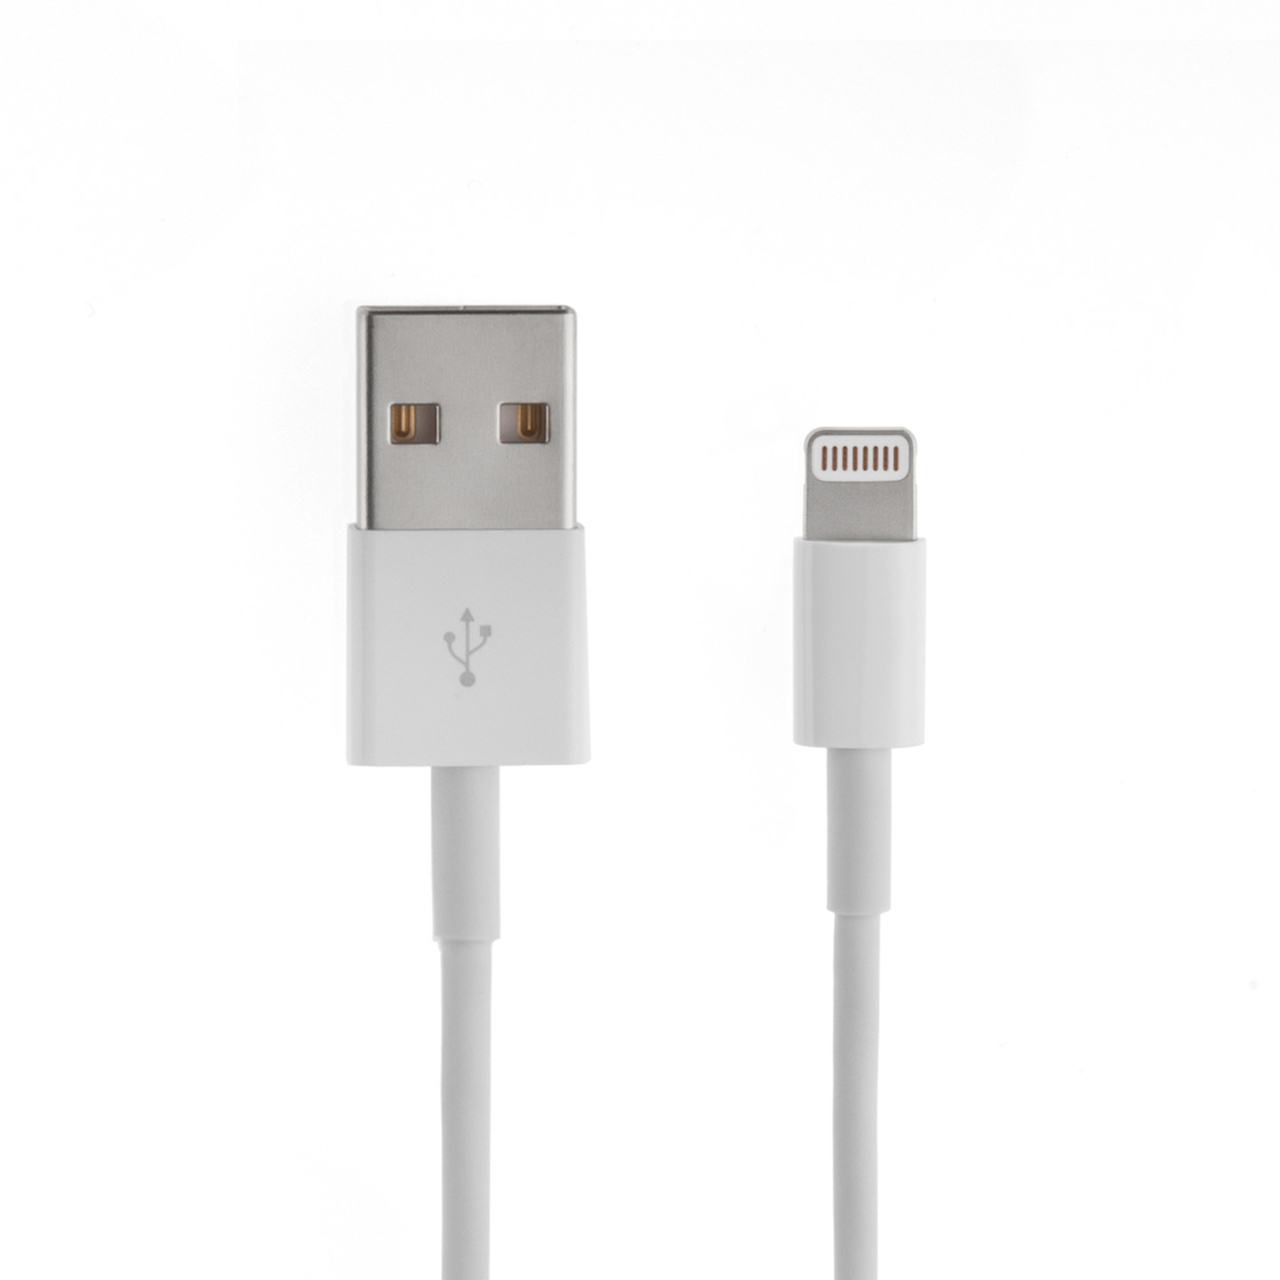 Implicaties sla vat USB kabel 1 meter voor iPhone & iPad - wit online bestellen - eforyou.nl